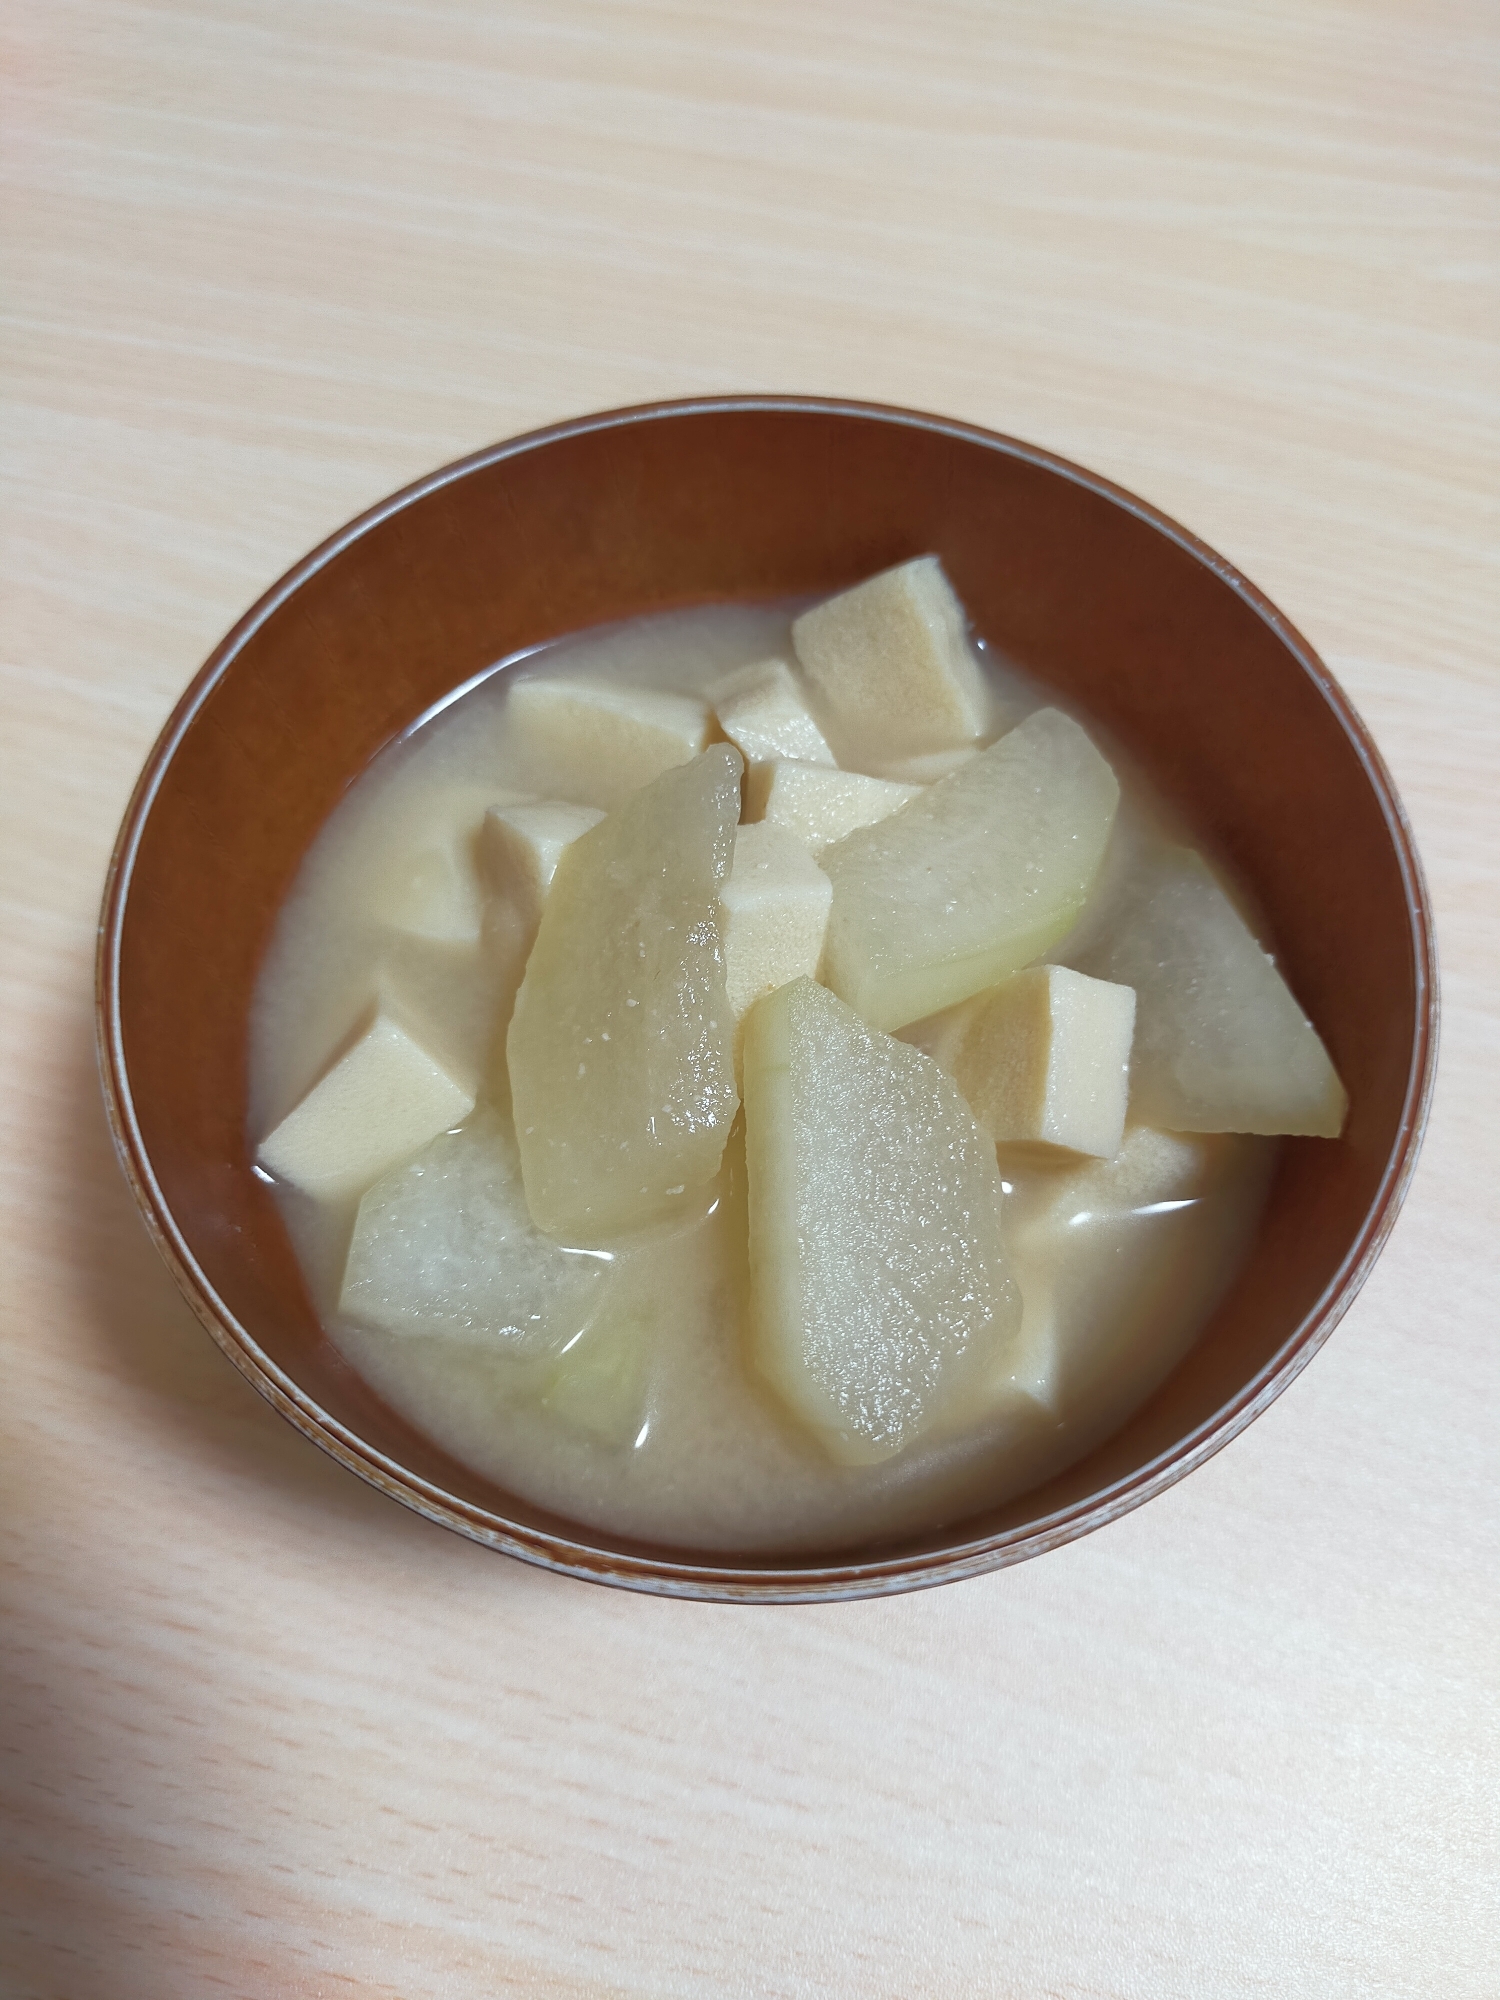 冬瓜と高野豆腐のお味噌汁